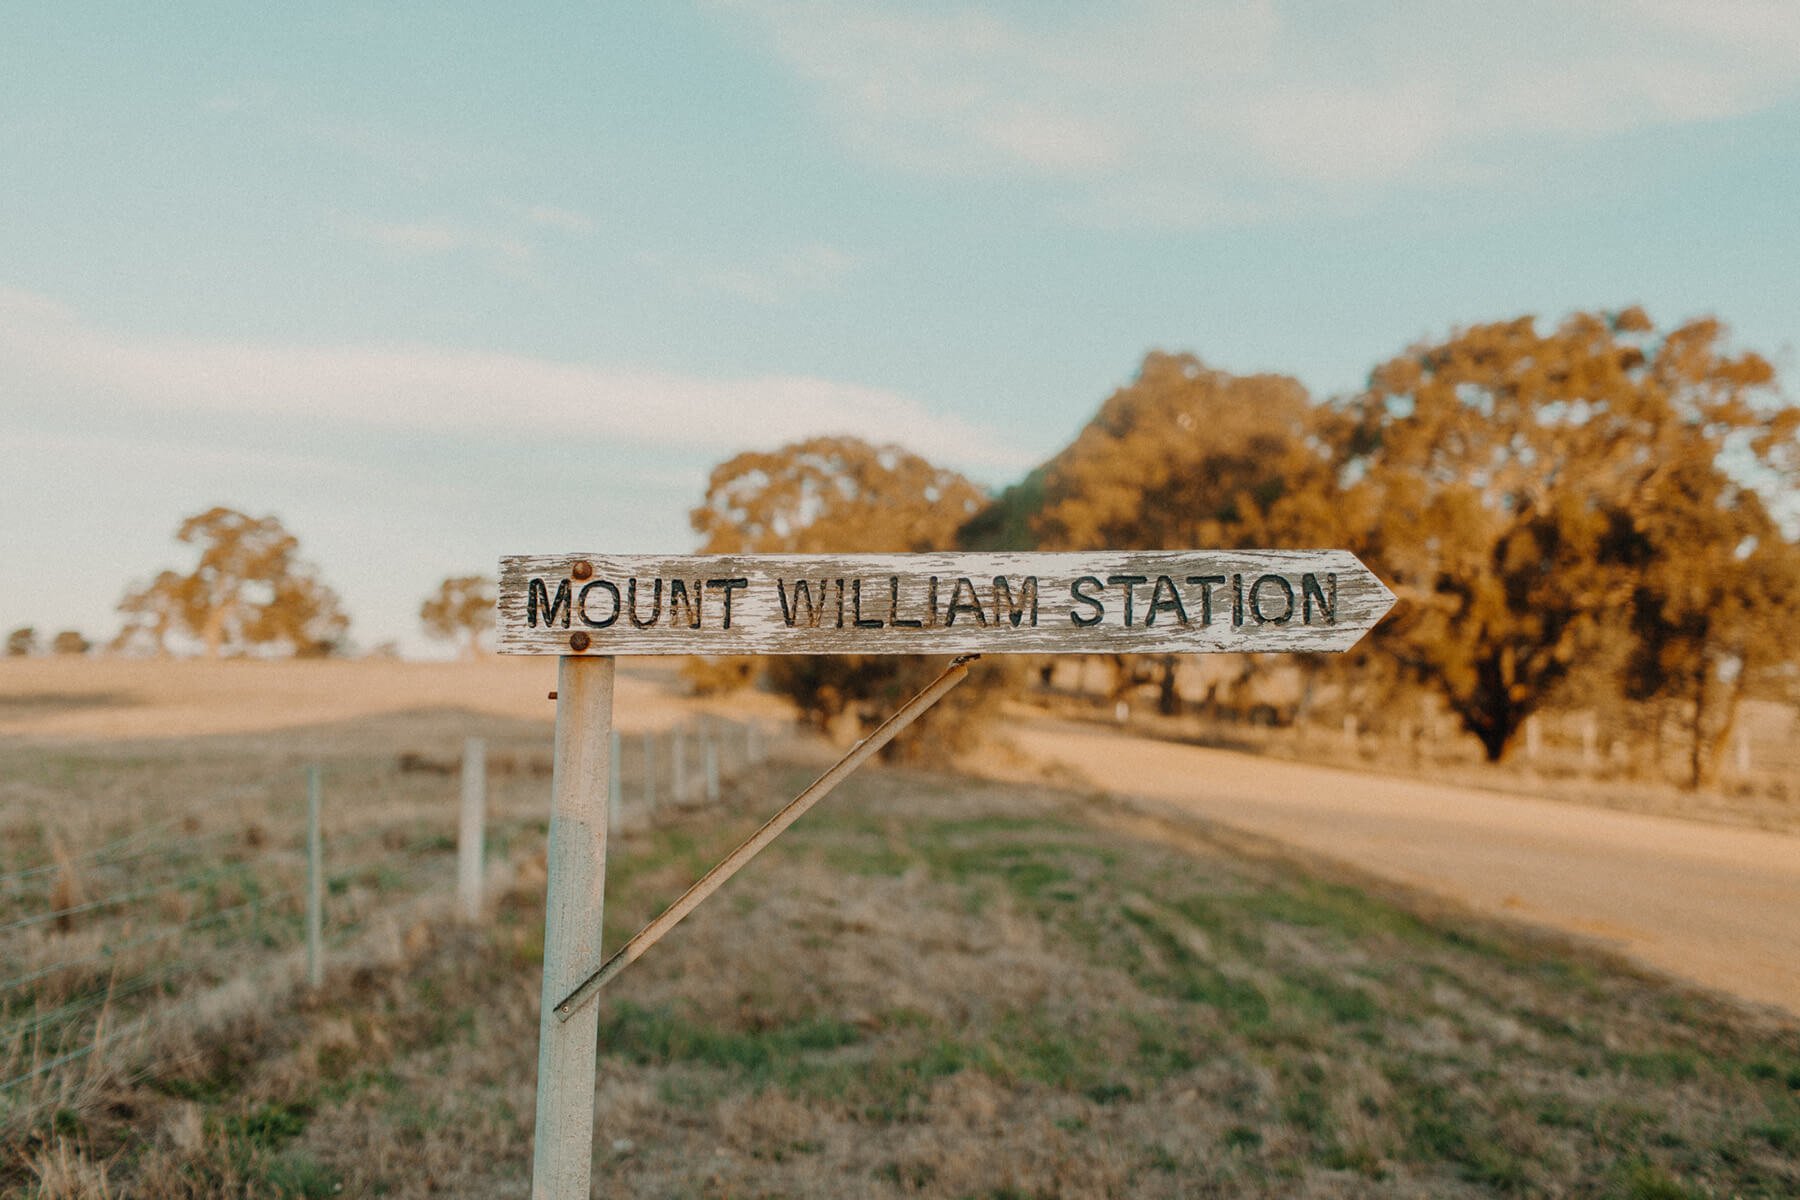 Grampians-MtWilliam-station-sign.jpg